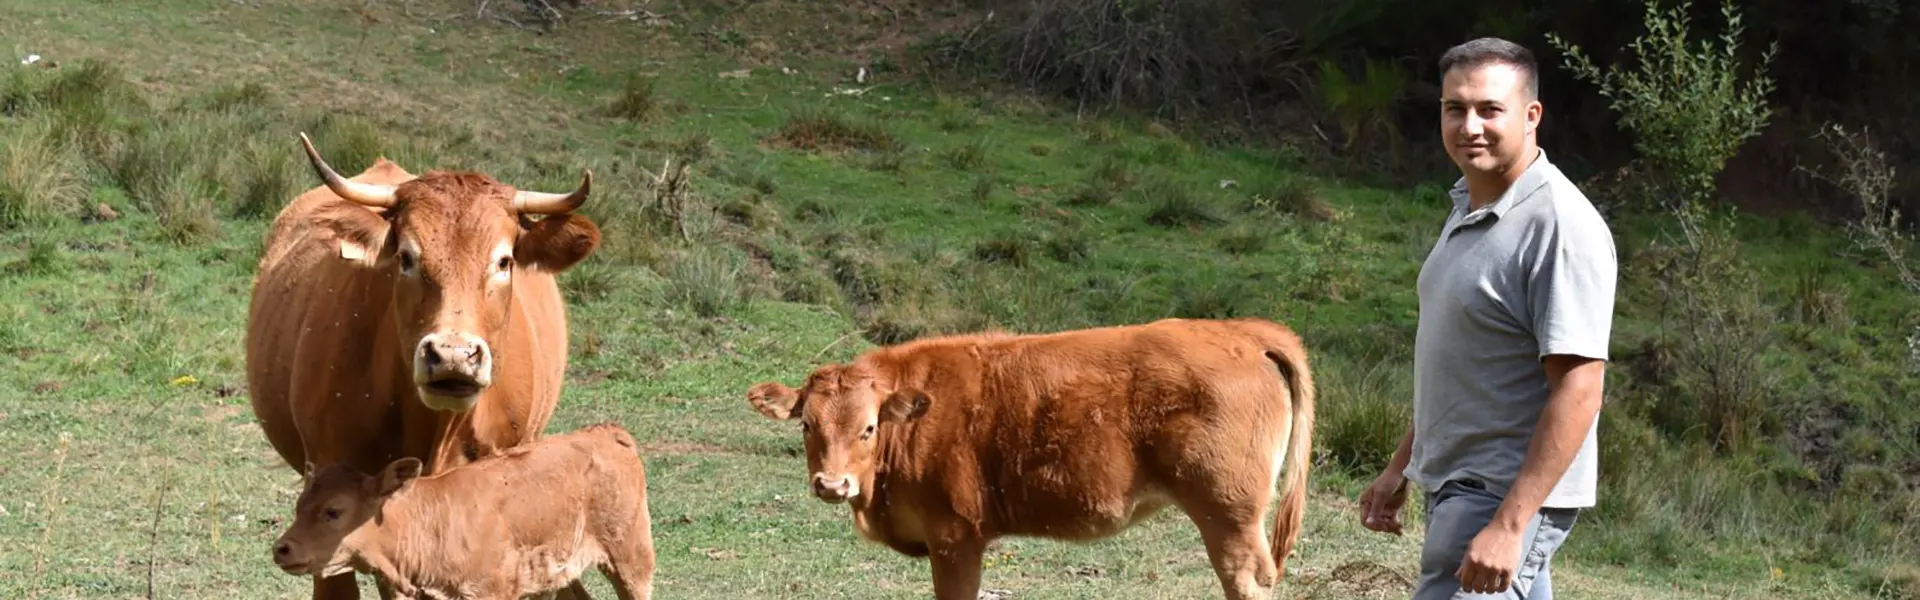 La apuesta por las nuevas tecnologías al servicio del ganado en la Montaña Leonesa ultimas noticias cesgar